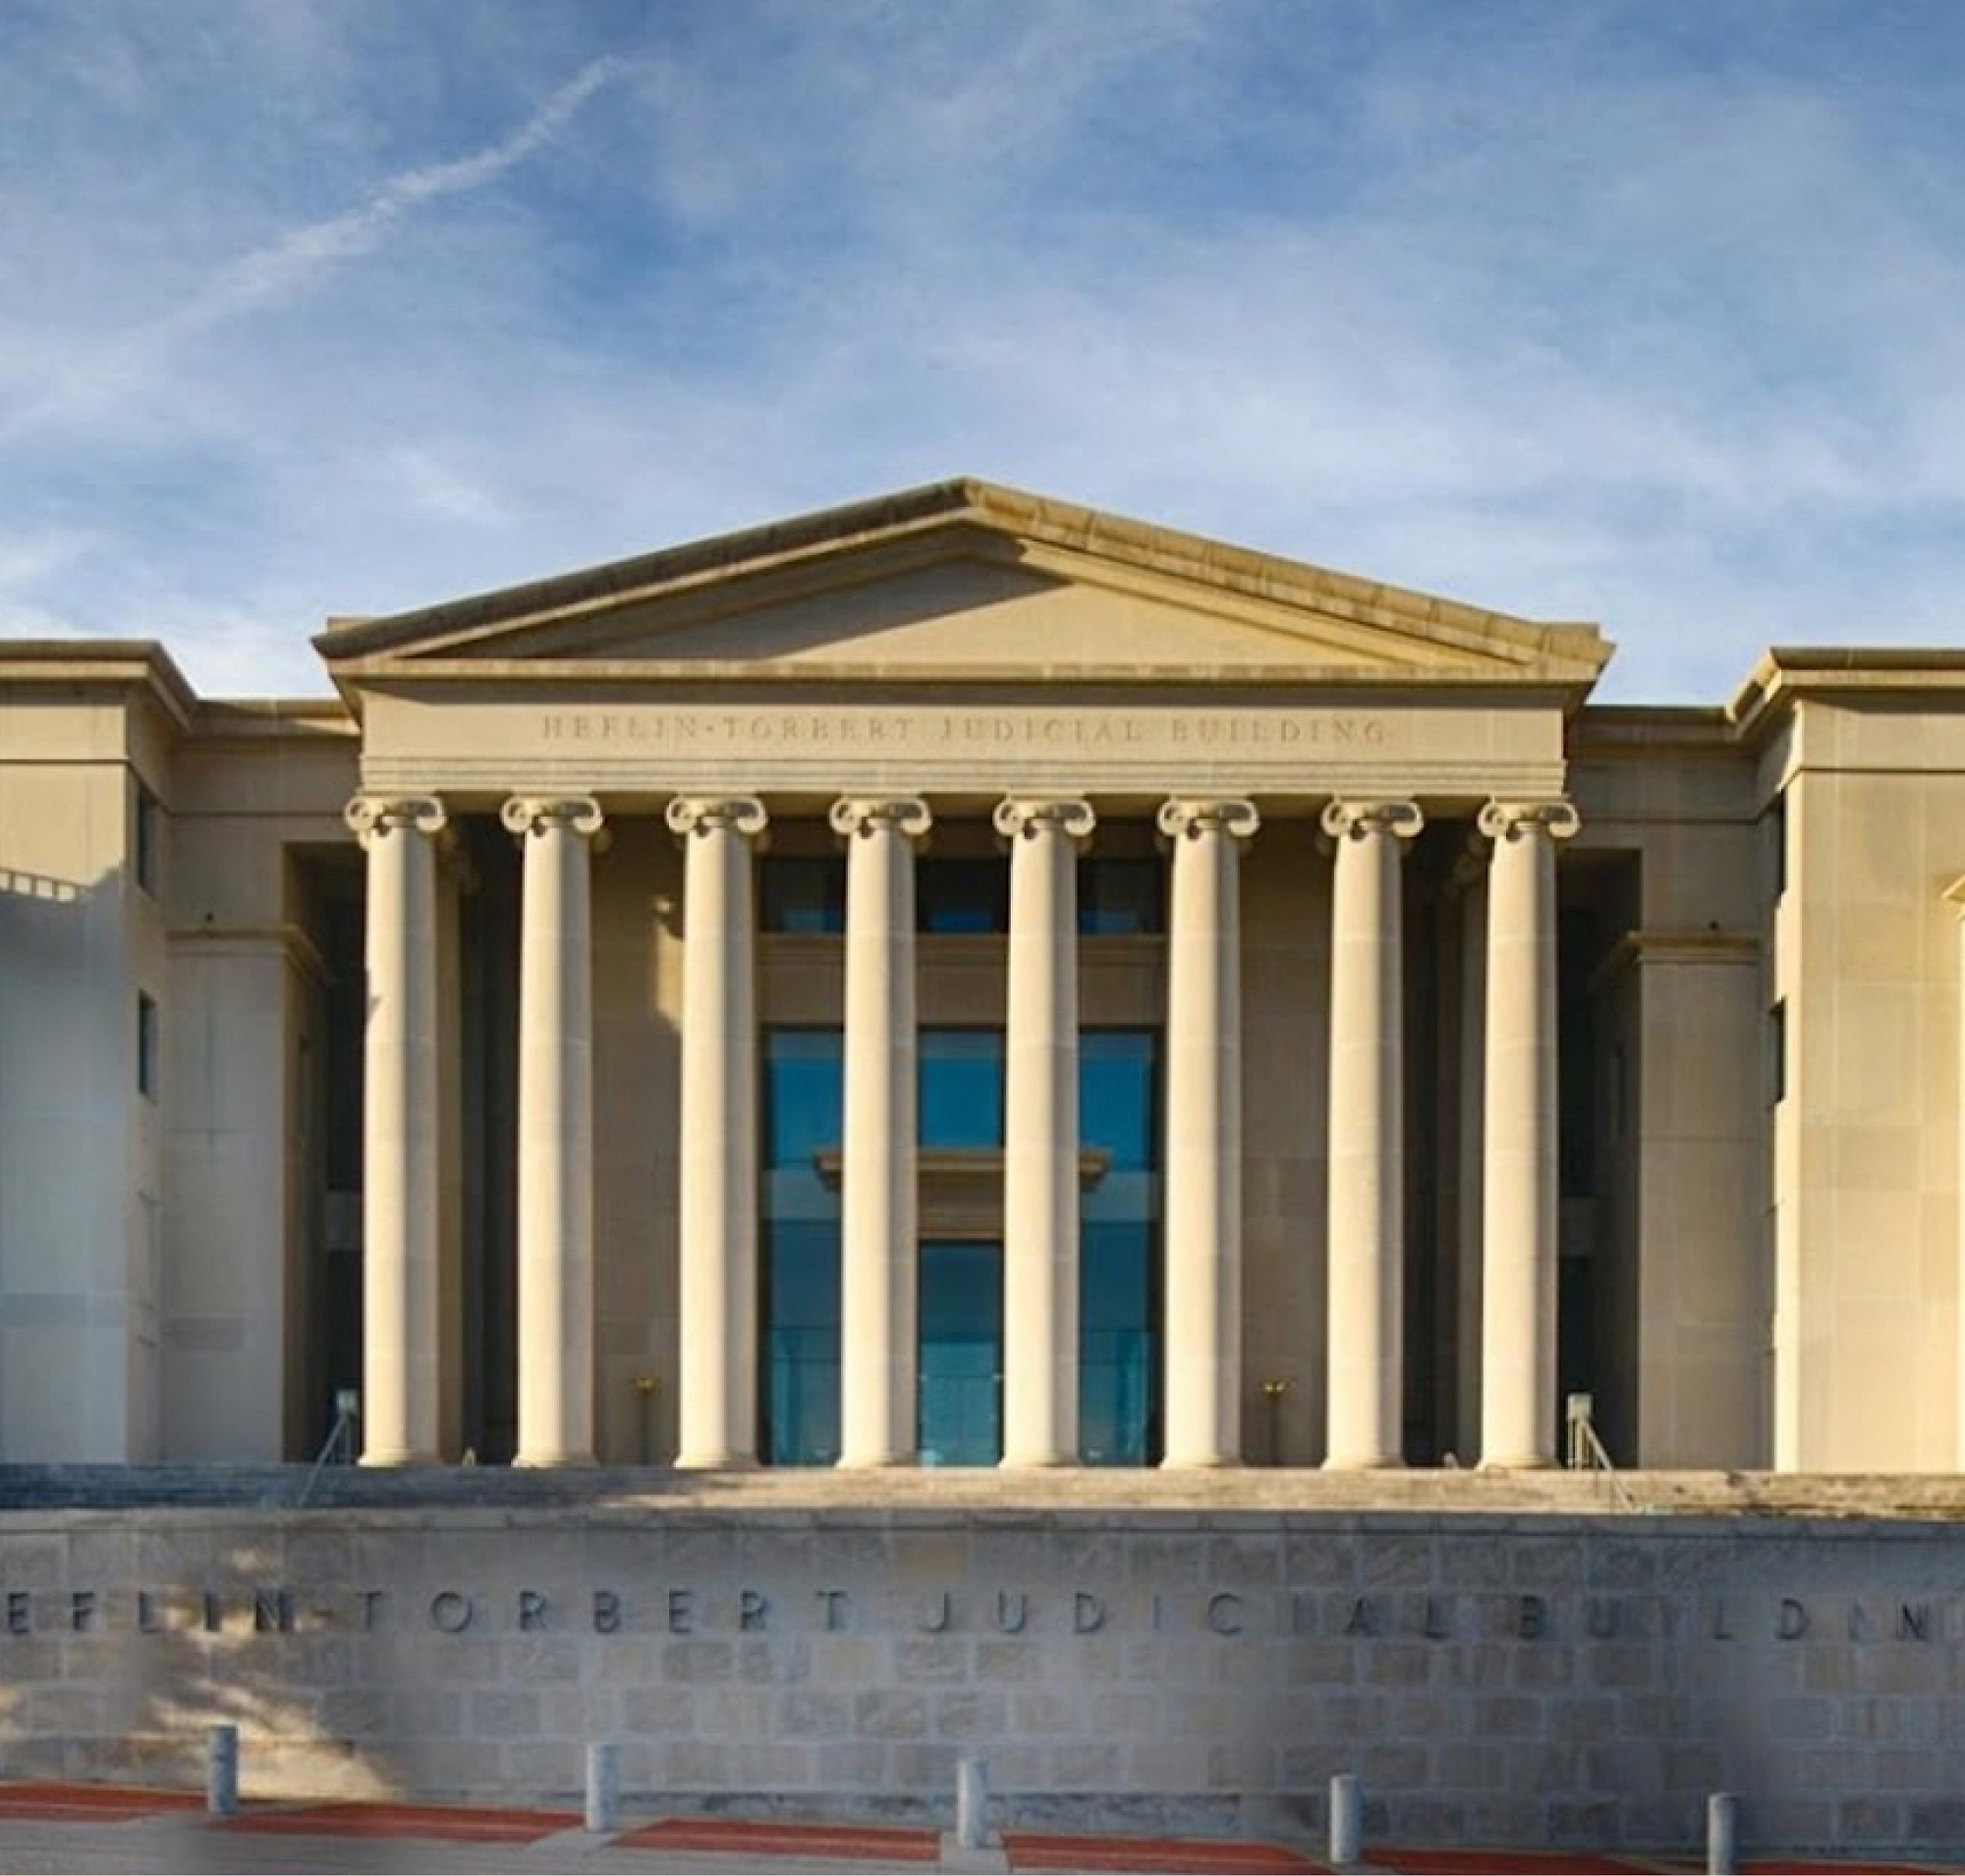 Hình ảnh mặt trước của tòa nhà tư pháp heflin-torbert có mặt tiền cổ điển với các cột dưới bầu trời trong xanh.